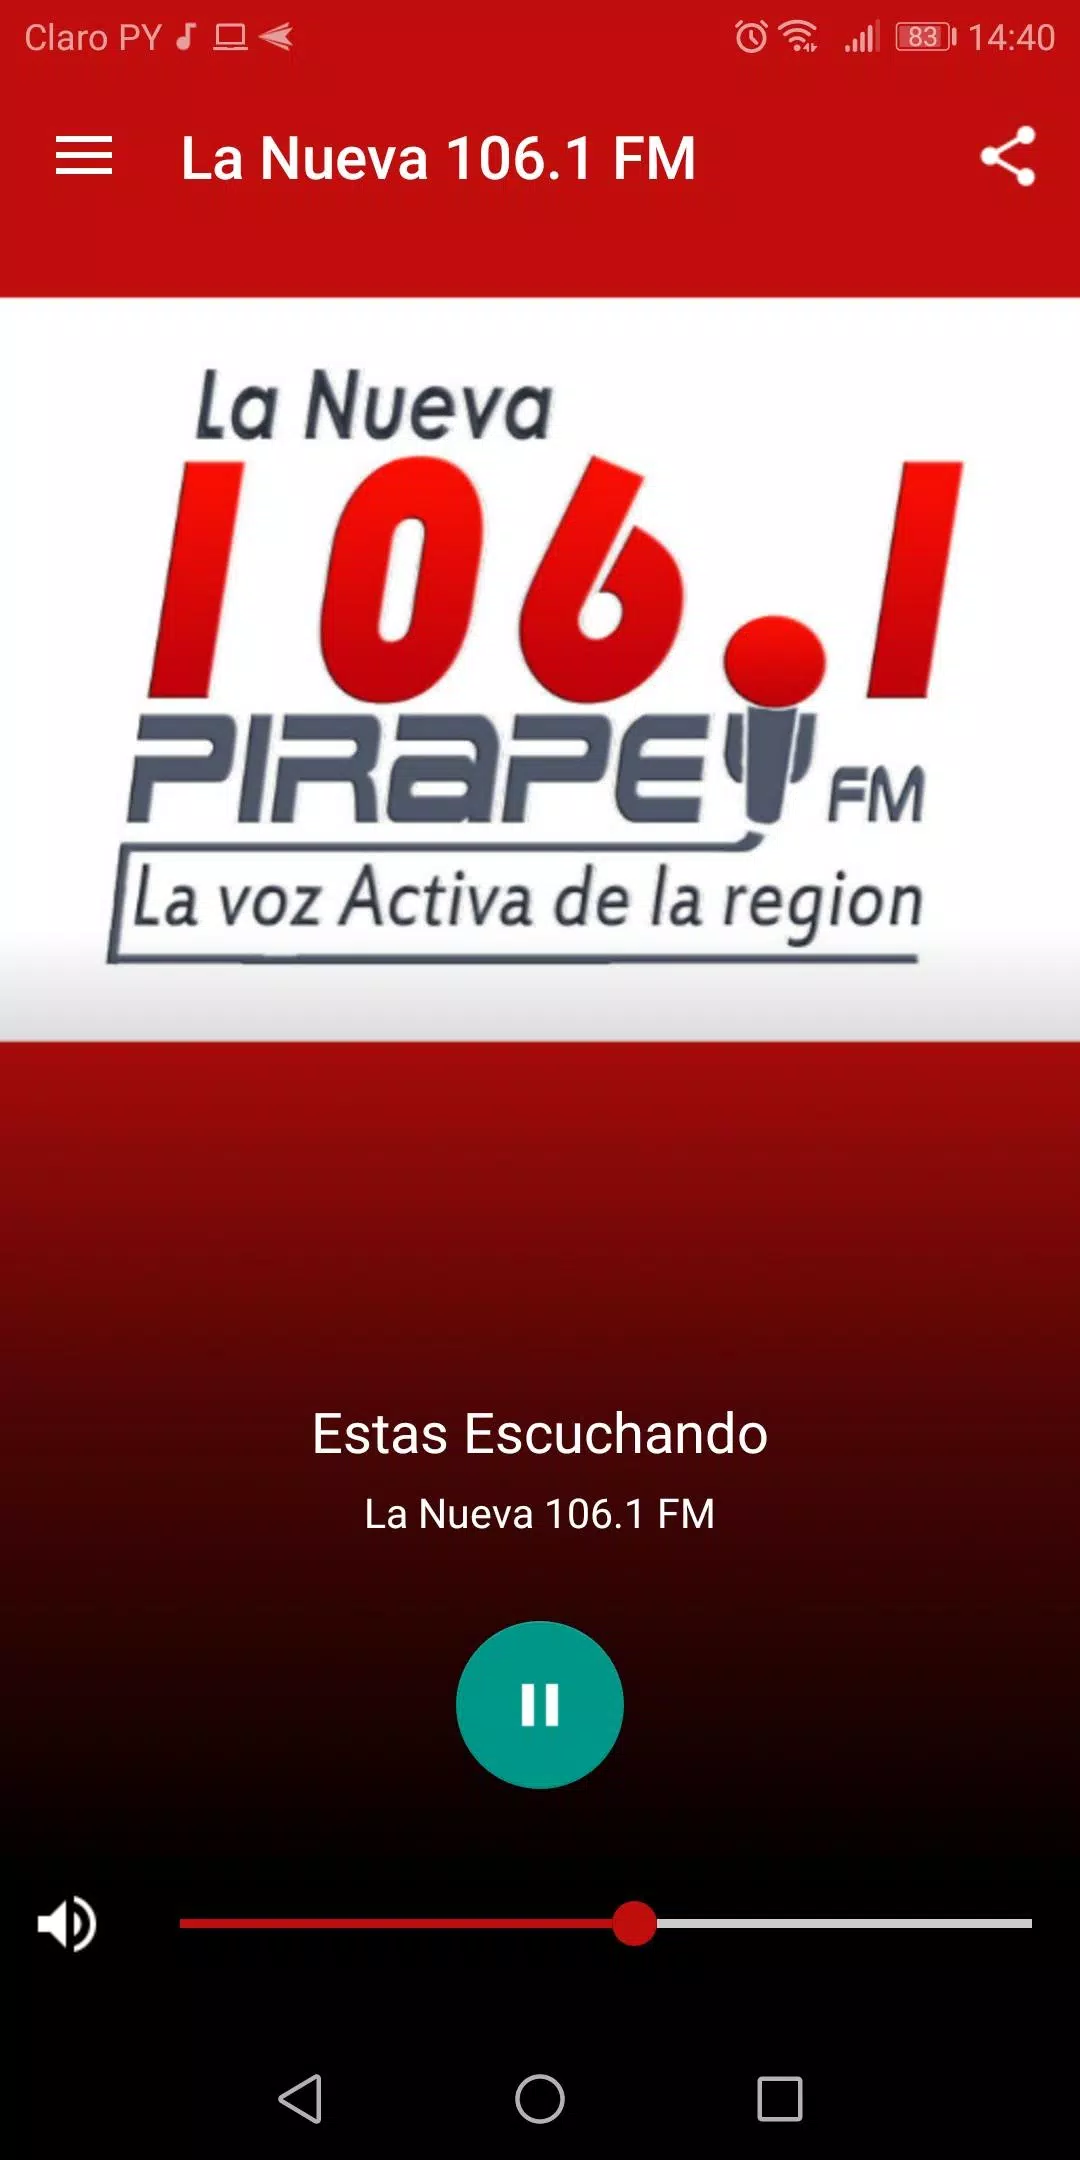 Radio La Nueva 106.1 - Pirapey APK for Android Download